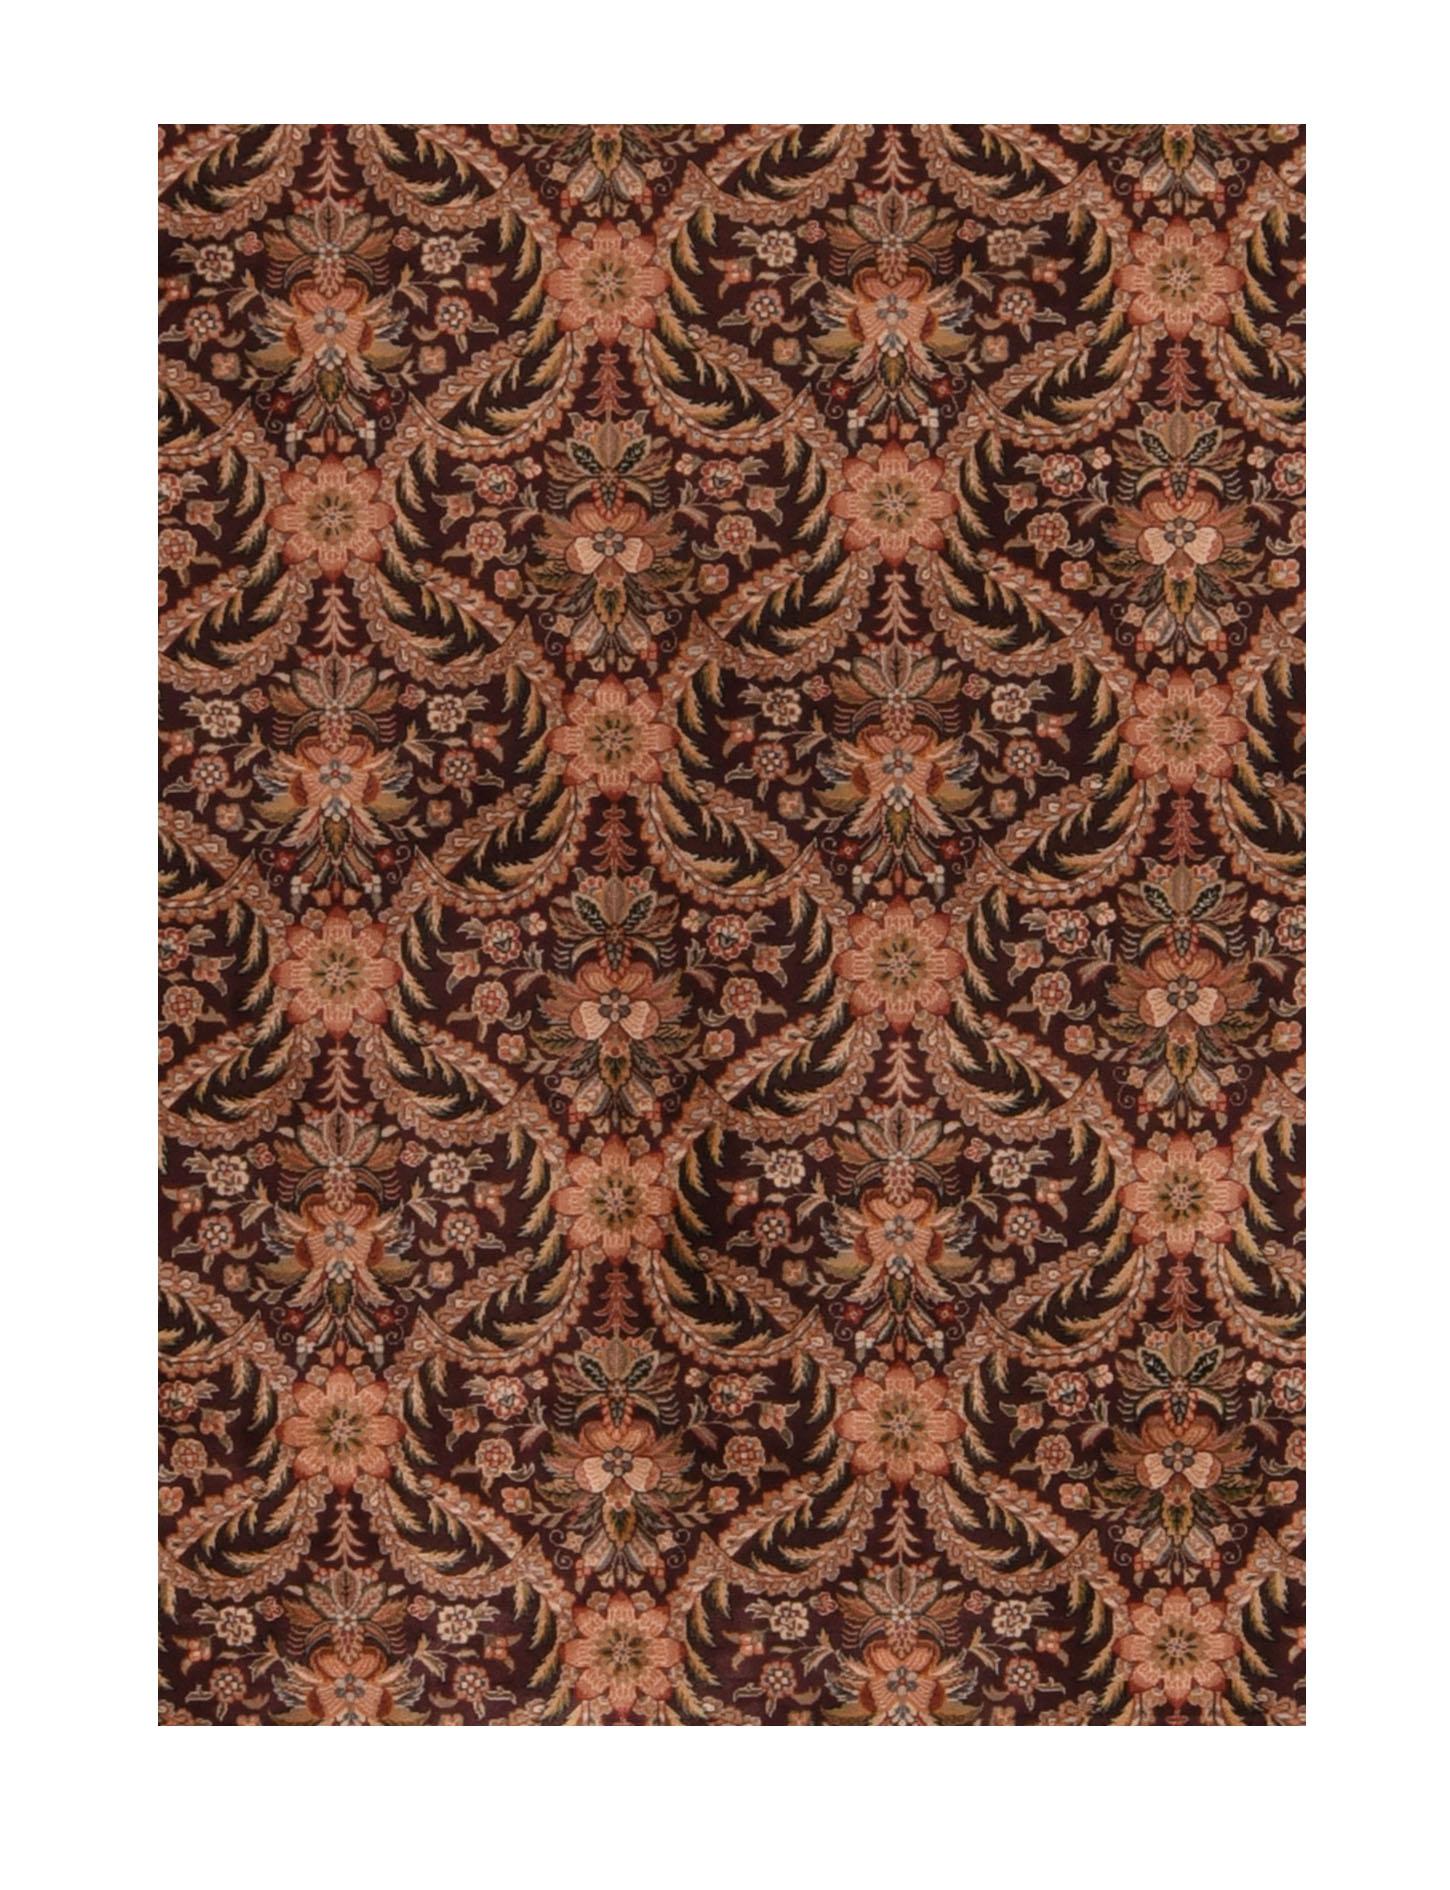 Ein pakistanischer Teppich (Pak Persian Rug oder Pakistani carpet) ist eine Art handgefertigter Bodenbelag, der traditionell in Pakistan hergestellt wird.

Pak-Persisch
Persisch inspirierte kurvige und/oder florale Muster, die in der Regel von alten